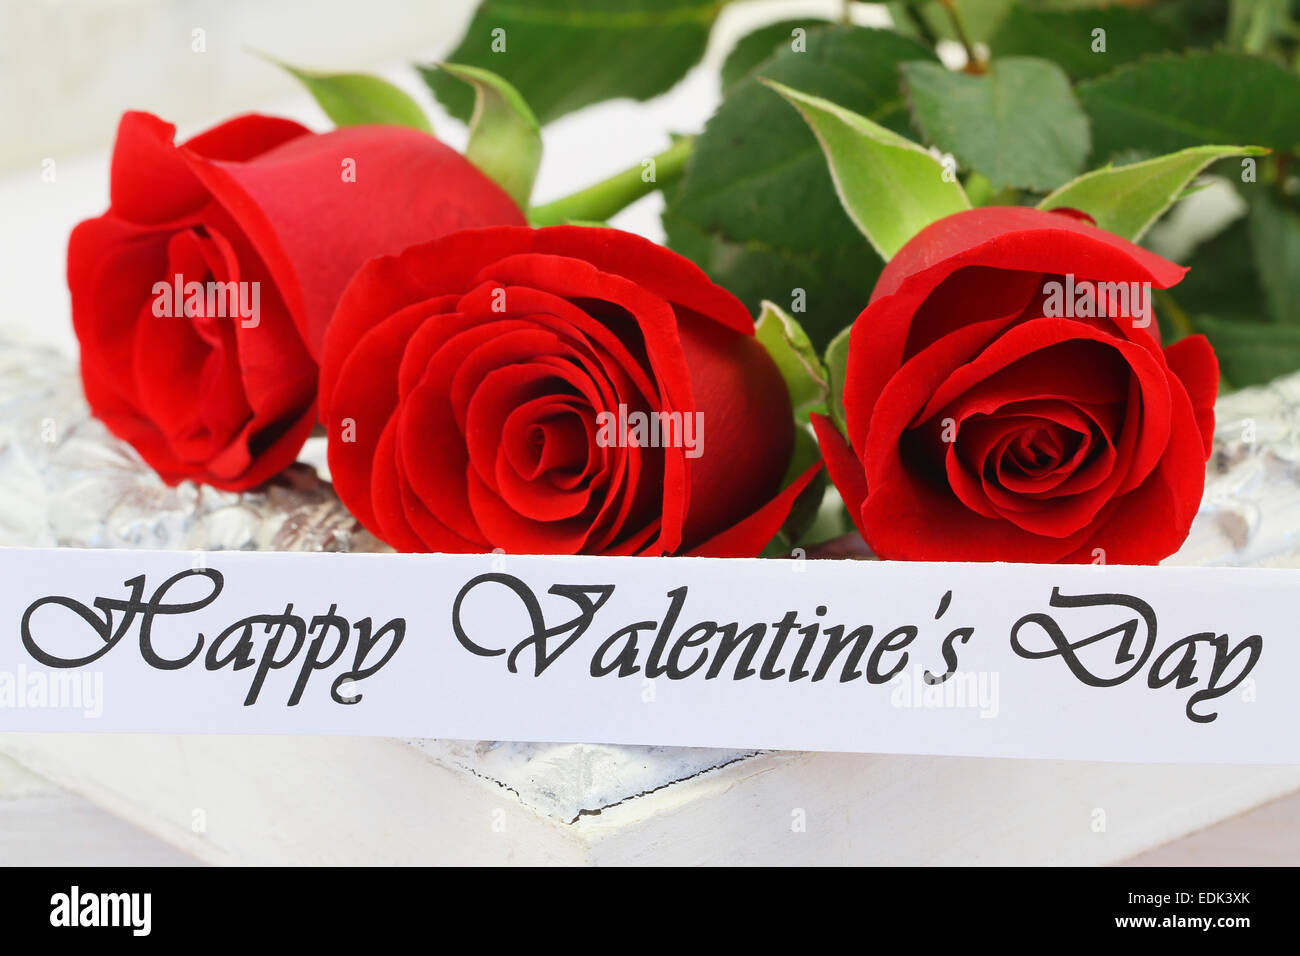 Happy Valentinstag-Karte mit drei roten Rosen Stockfoto